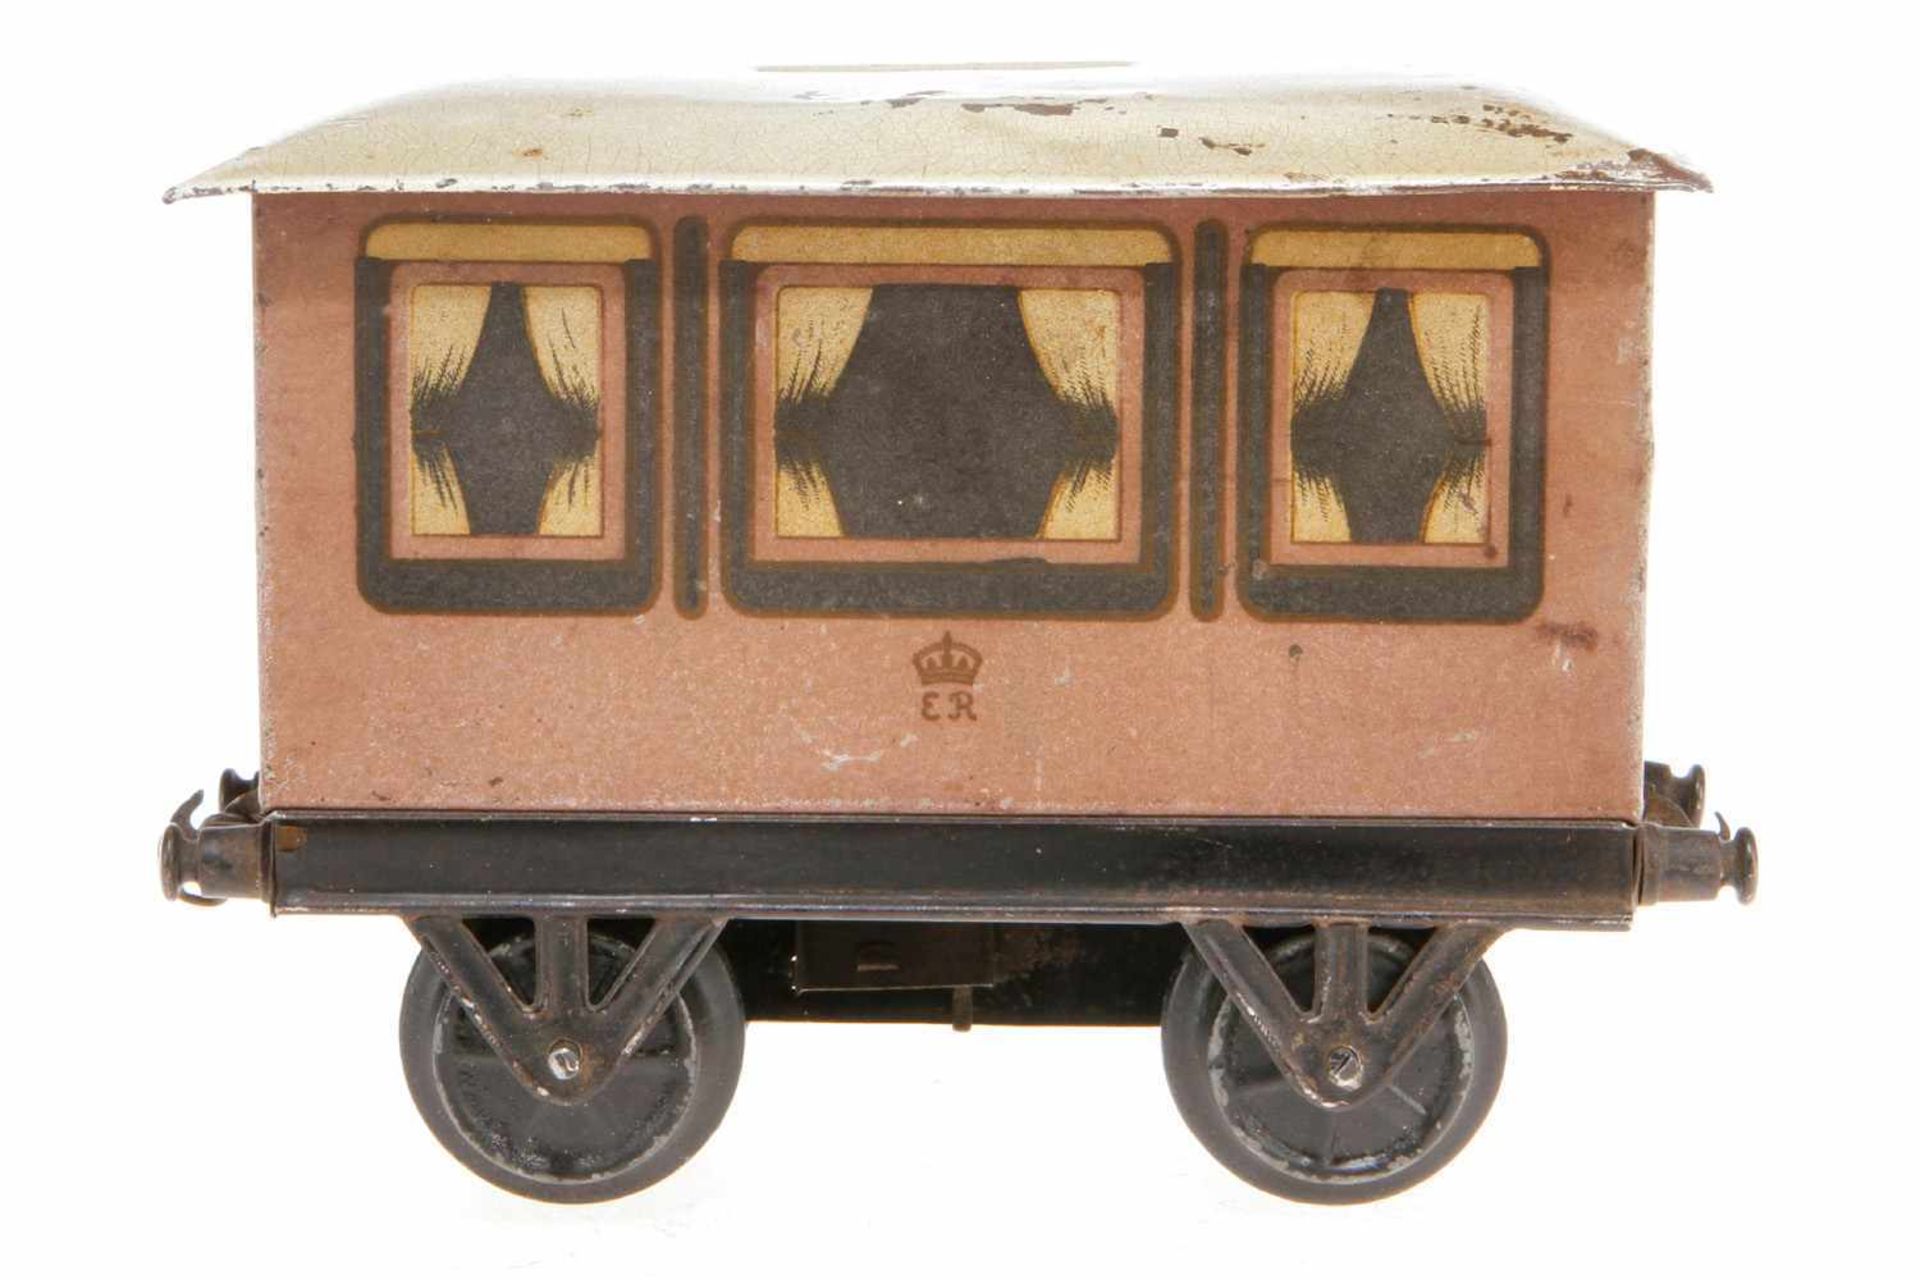 ER Wagen als Spardose, S 1, uralt, Stirnseiten beschriftet mit "The Railway Saloon of H. M. King